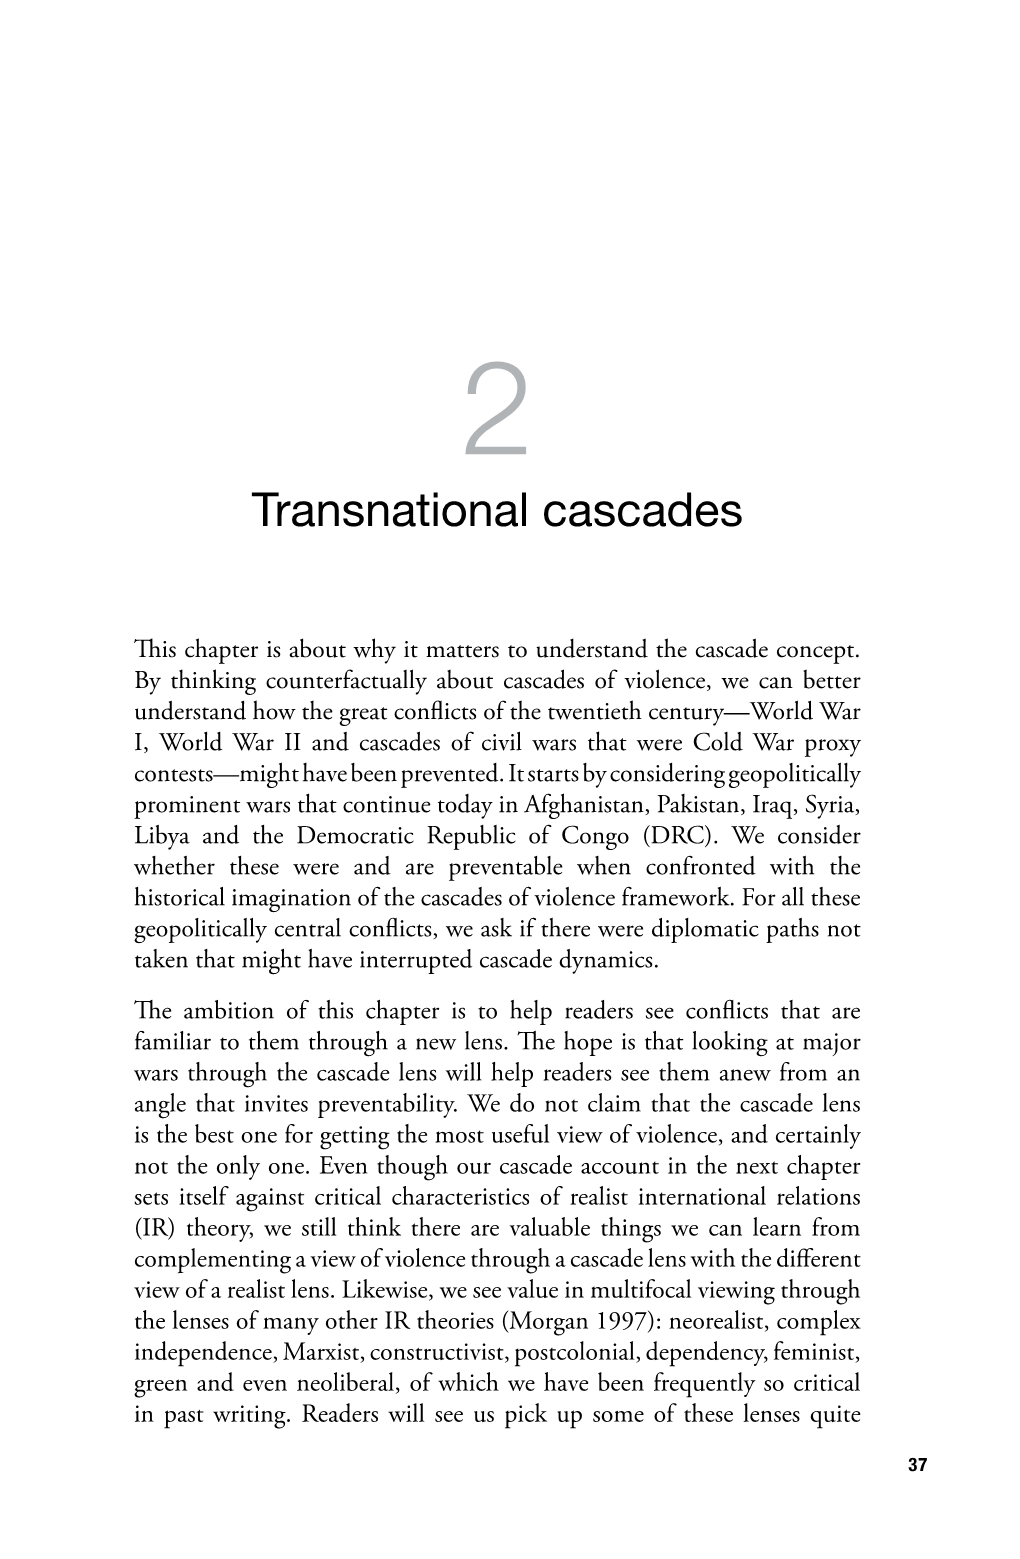 2. Transnational Cascades